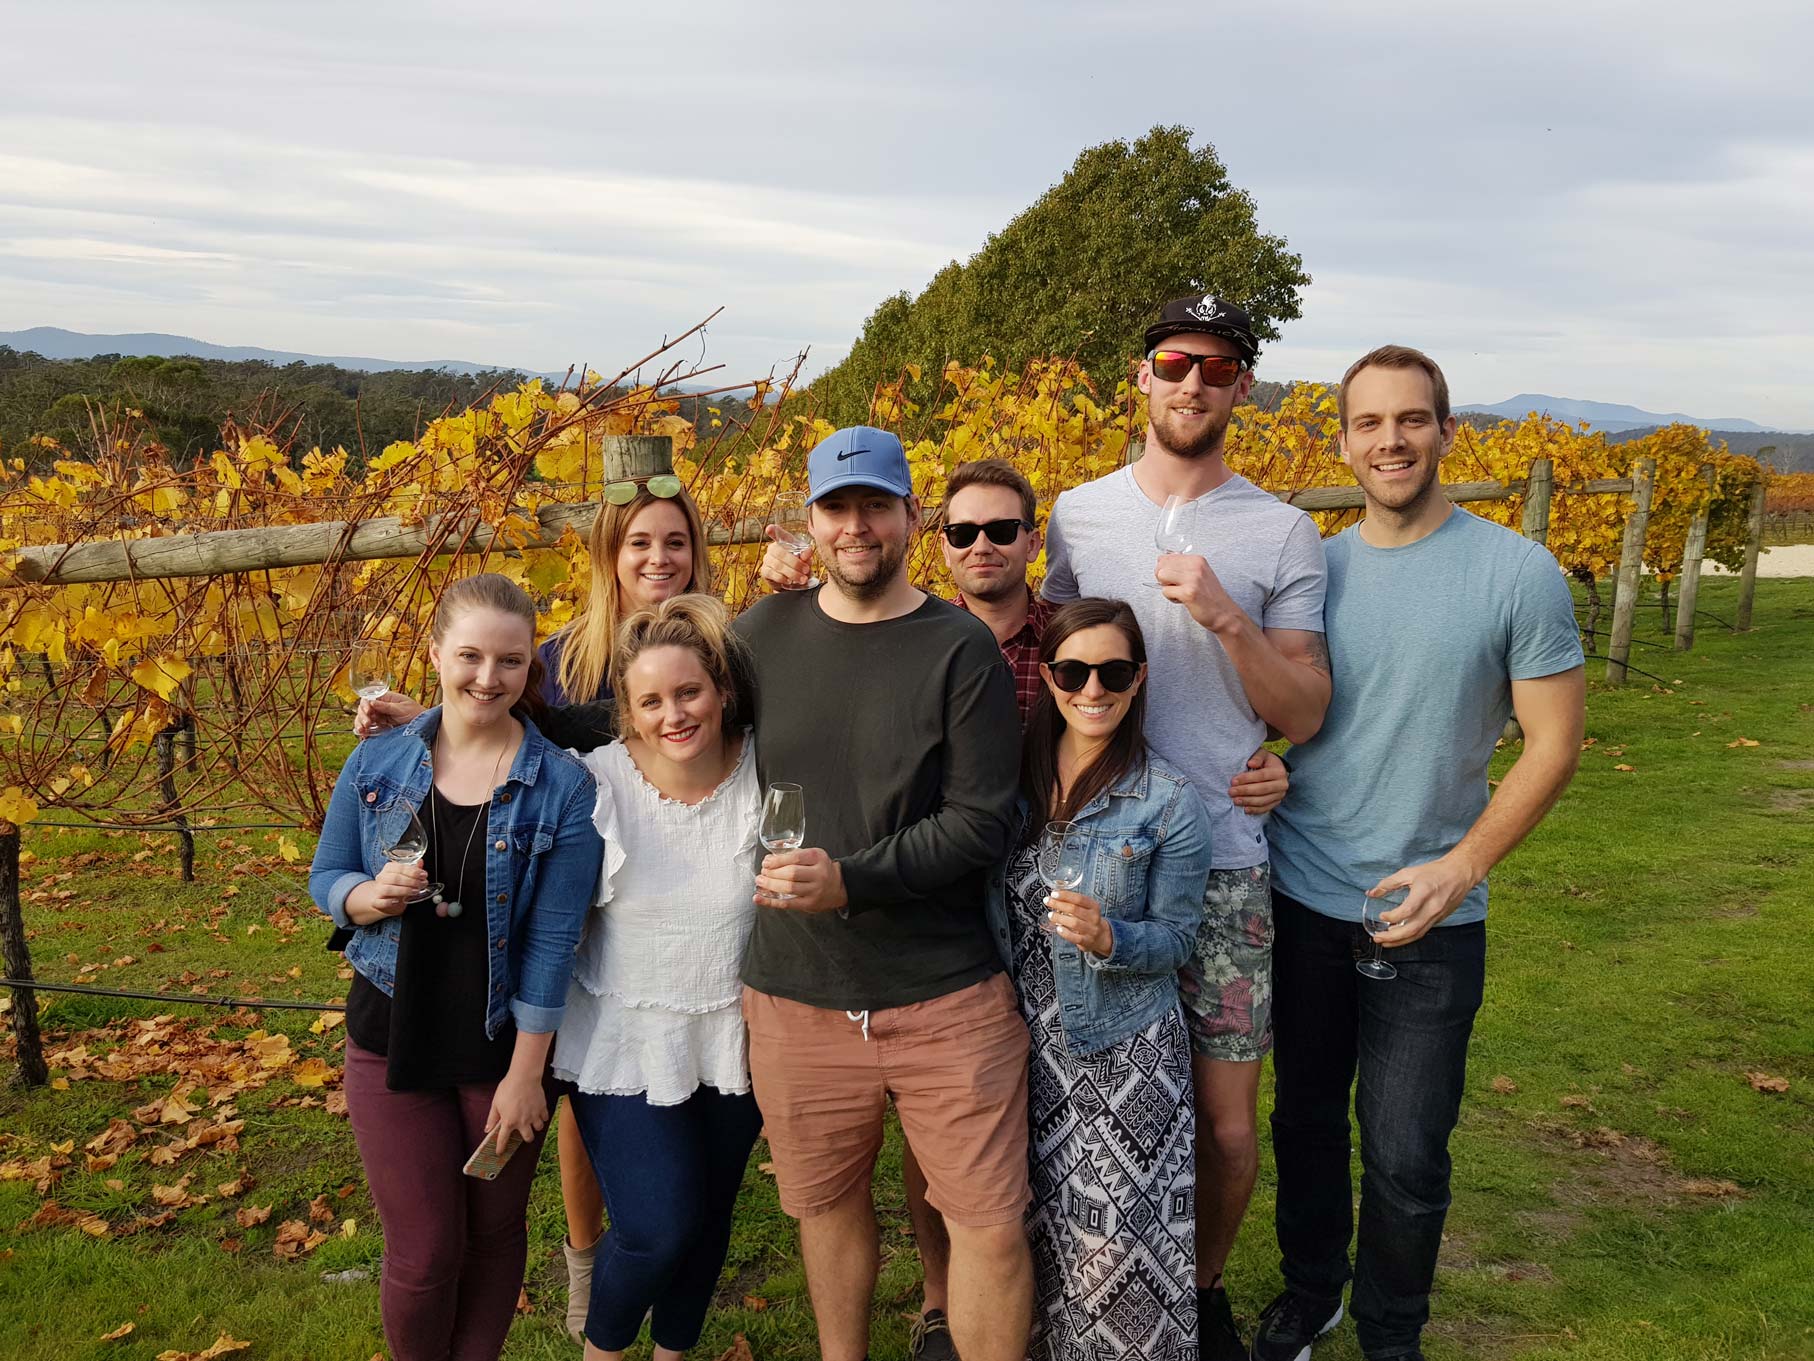 Valleybrook Wine group tour